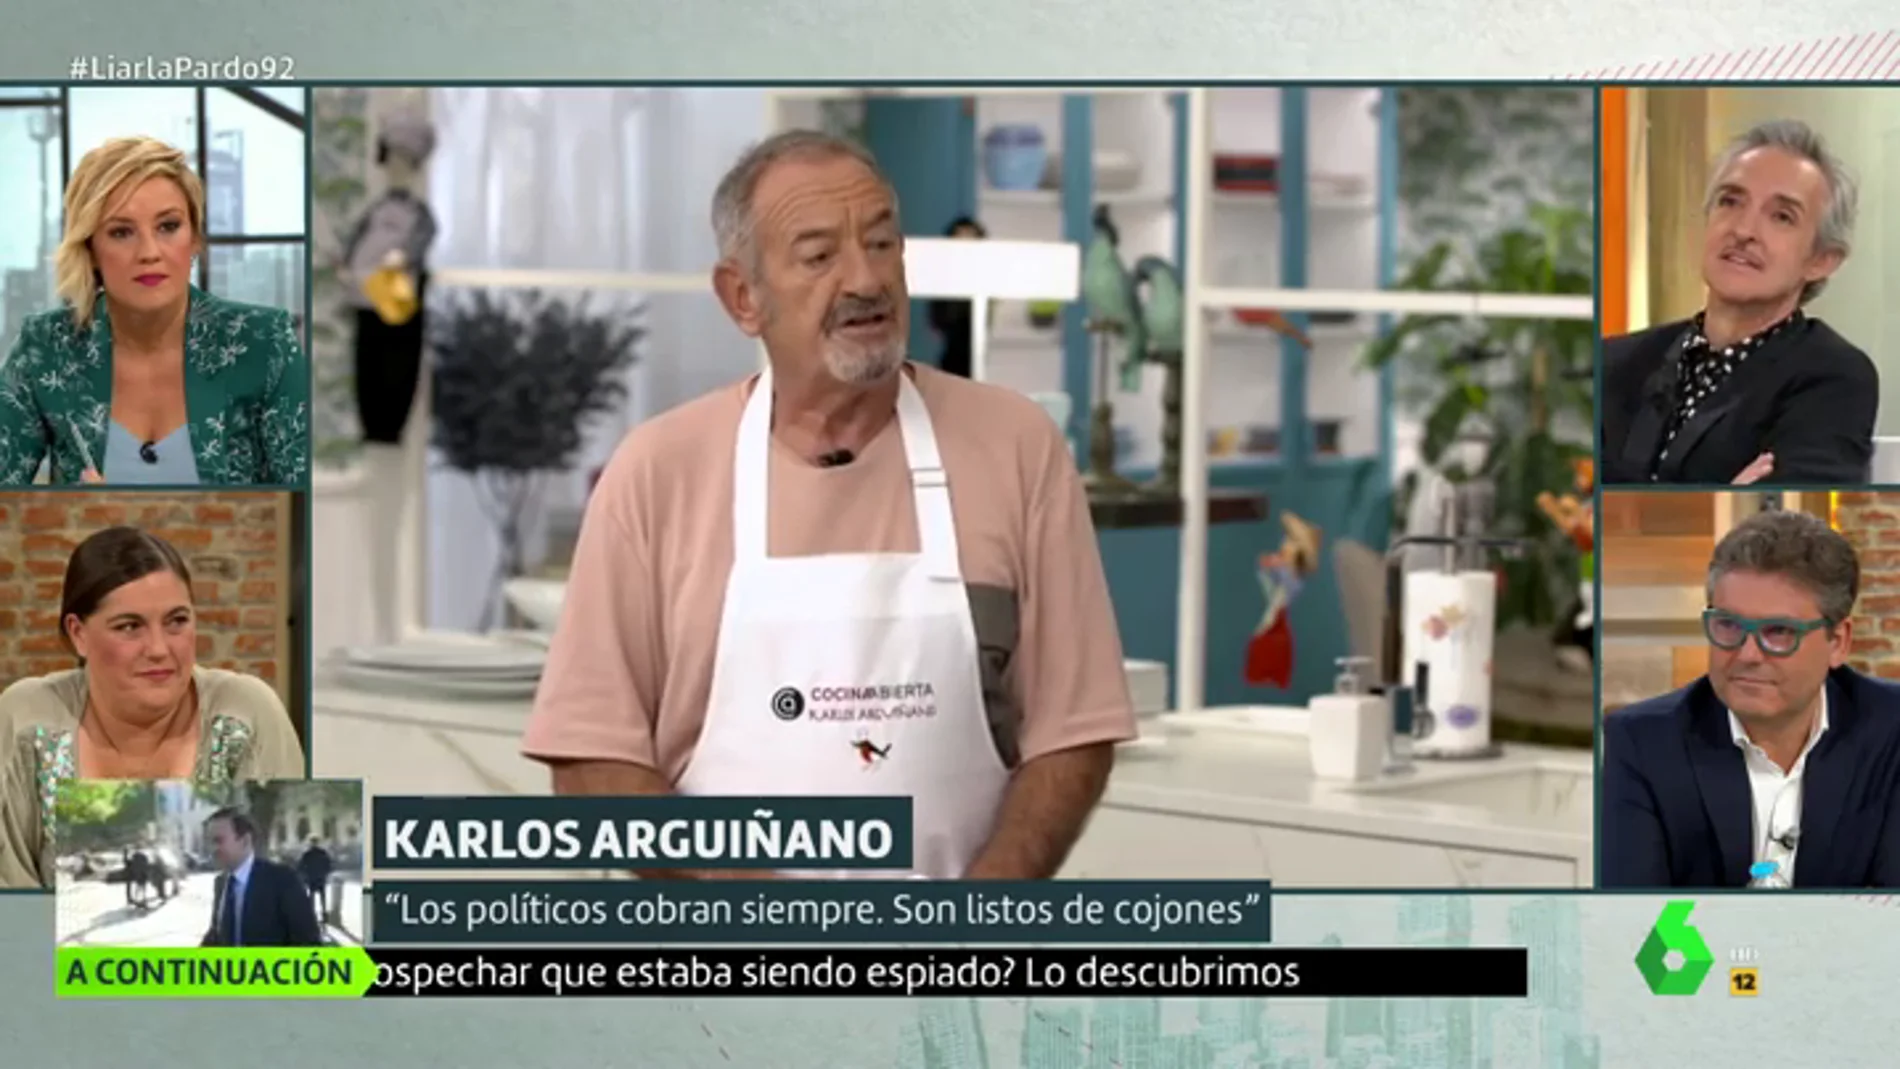 Karlos Arguiñano en Liarla Pardo